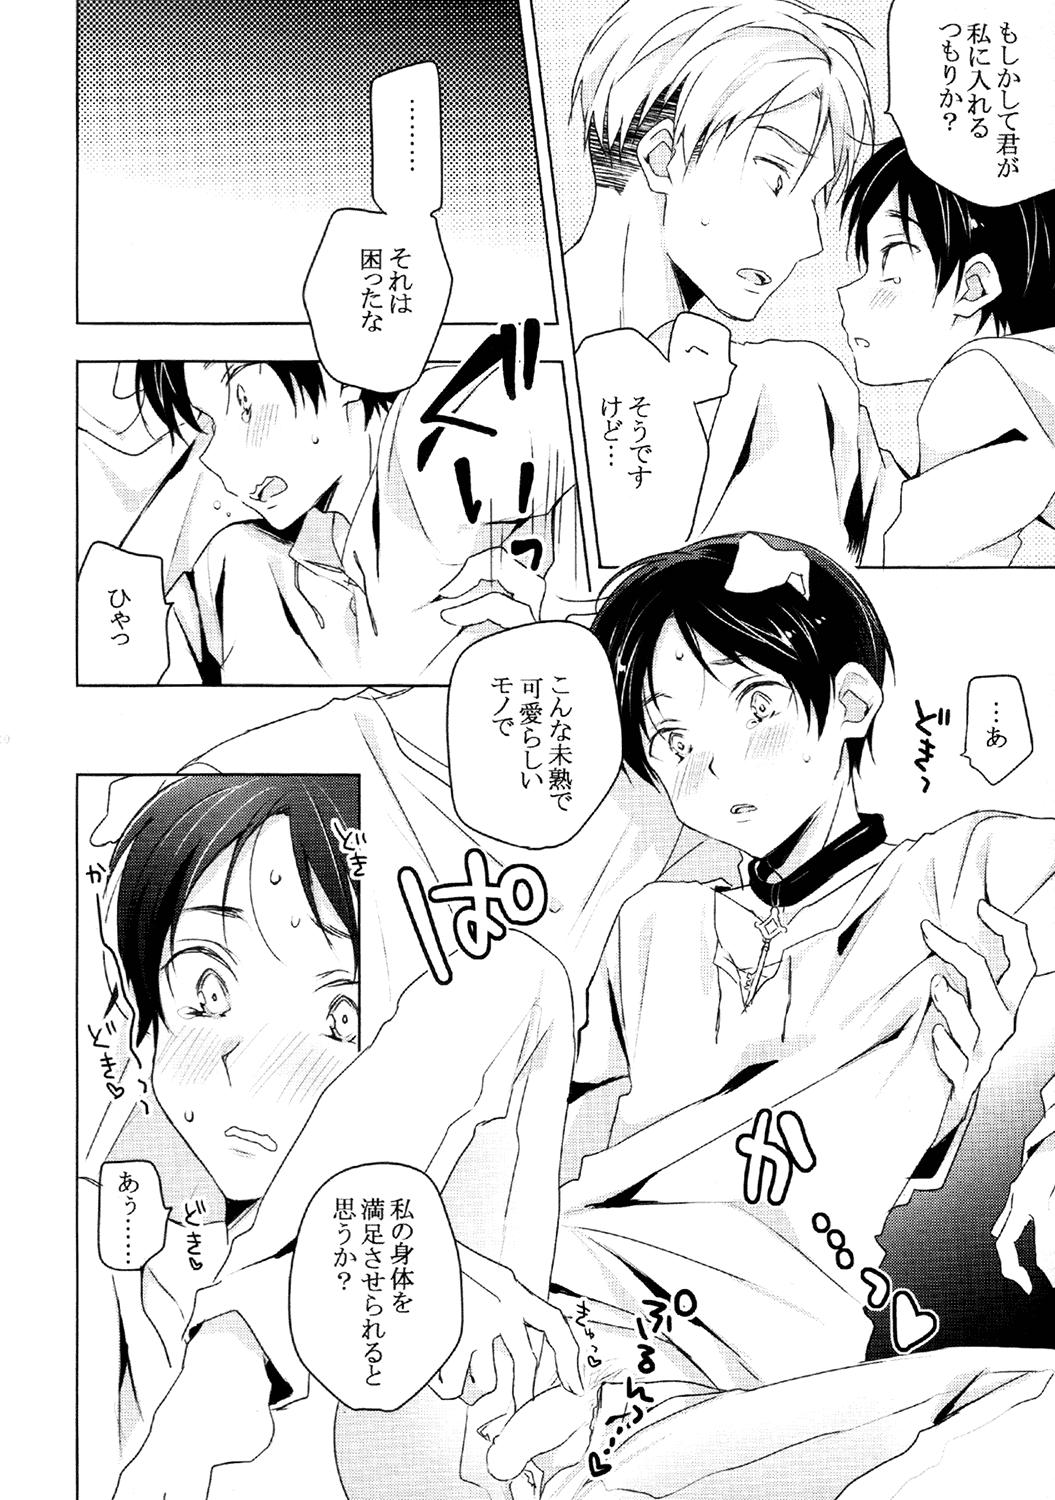 Young (HaruCC19) [hey you! (Non)] Ere-kun (Inu) wa Kyou mo Setsunai (Shingeki no Kyojin) - Shingeki no kyojin Heels - Page 7